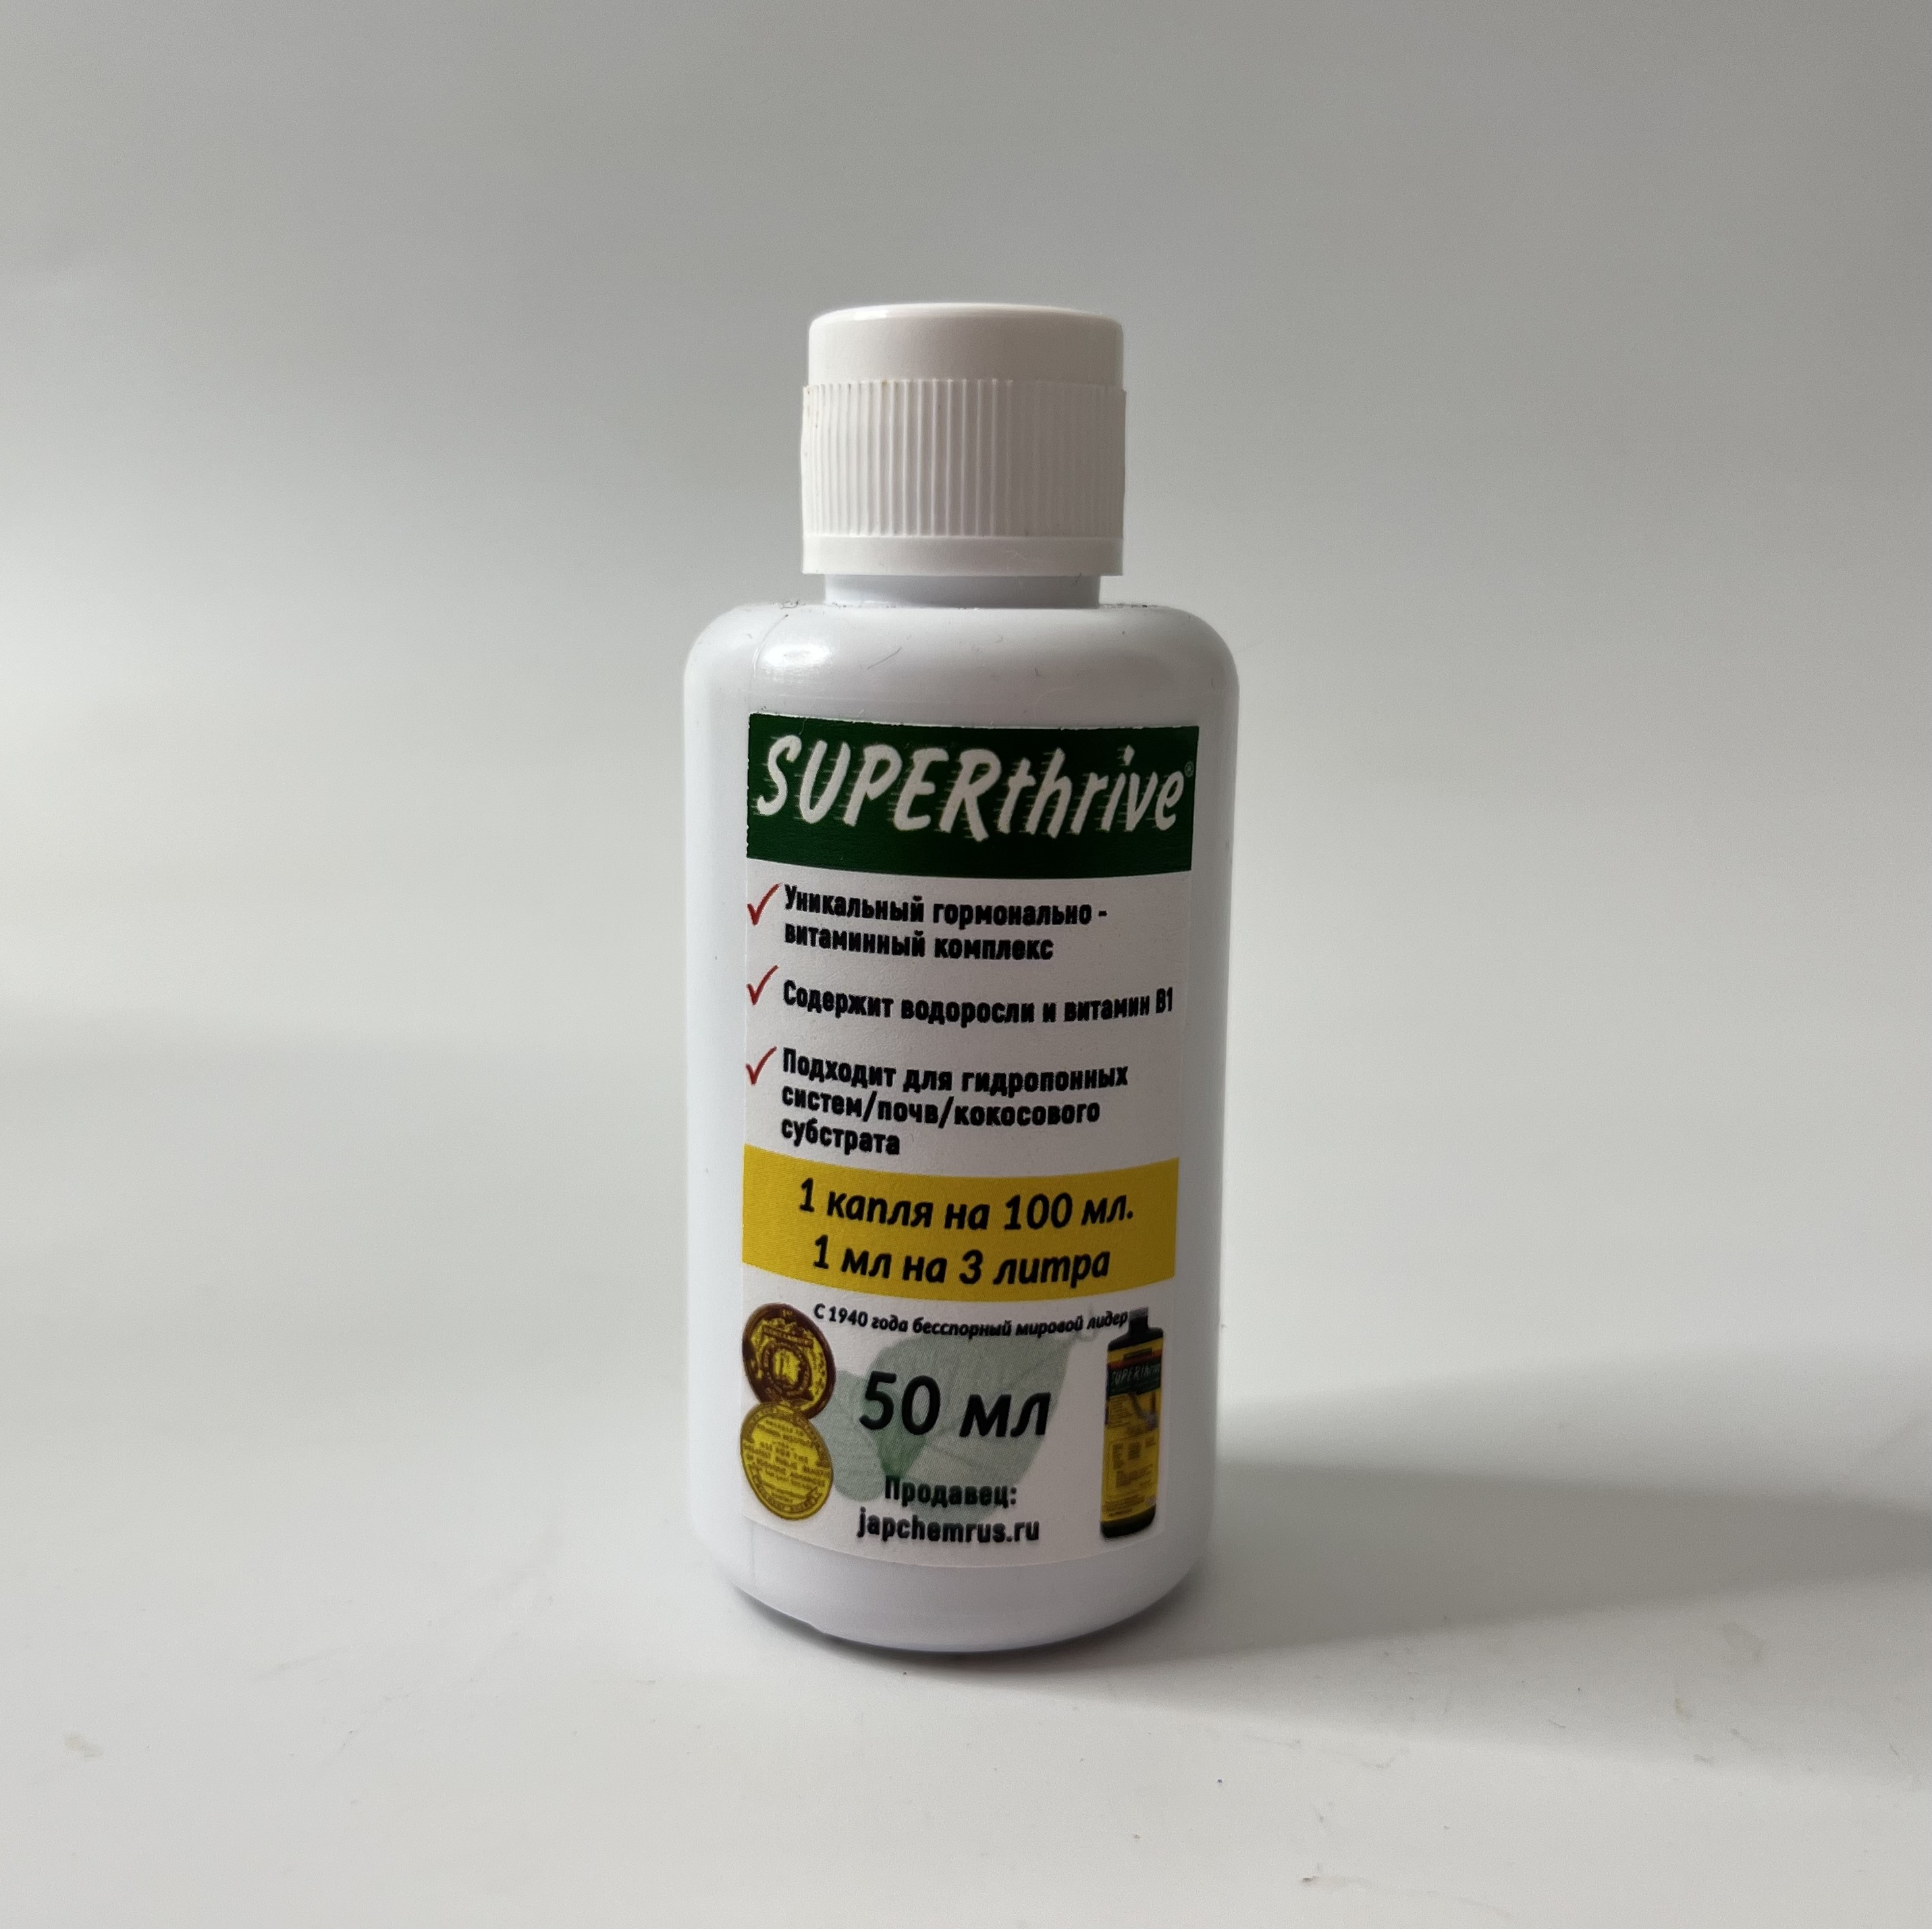 Super thrive - витаминно-гормонный комплекс